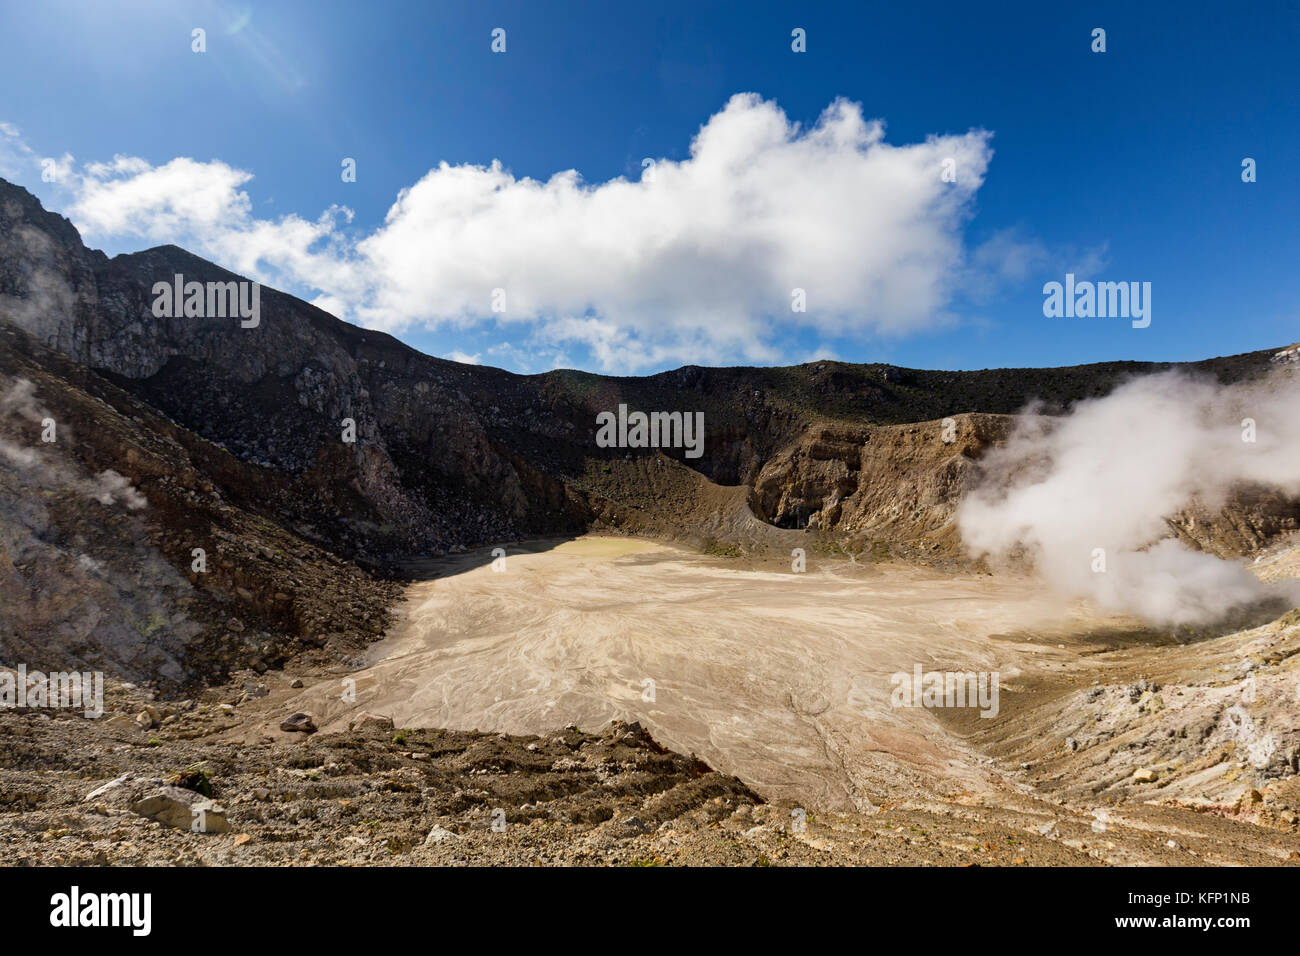 La caldera del monte egon con un piccolo lago di acido solforico e di gas provenienti dal di dentro il vulcano. Foto Stock